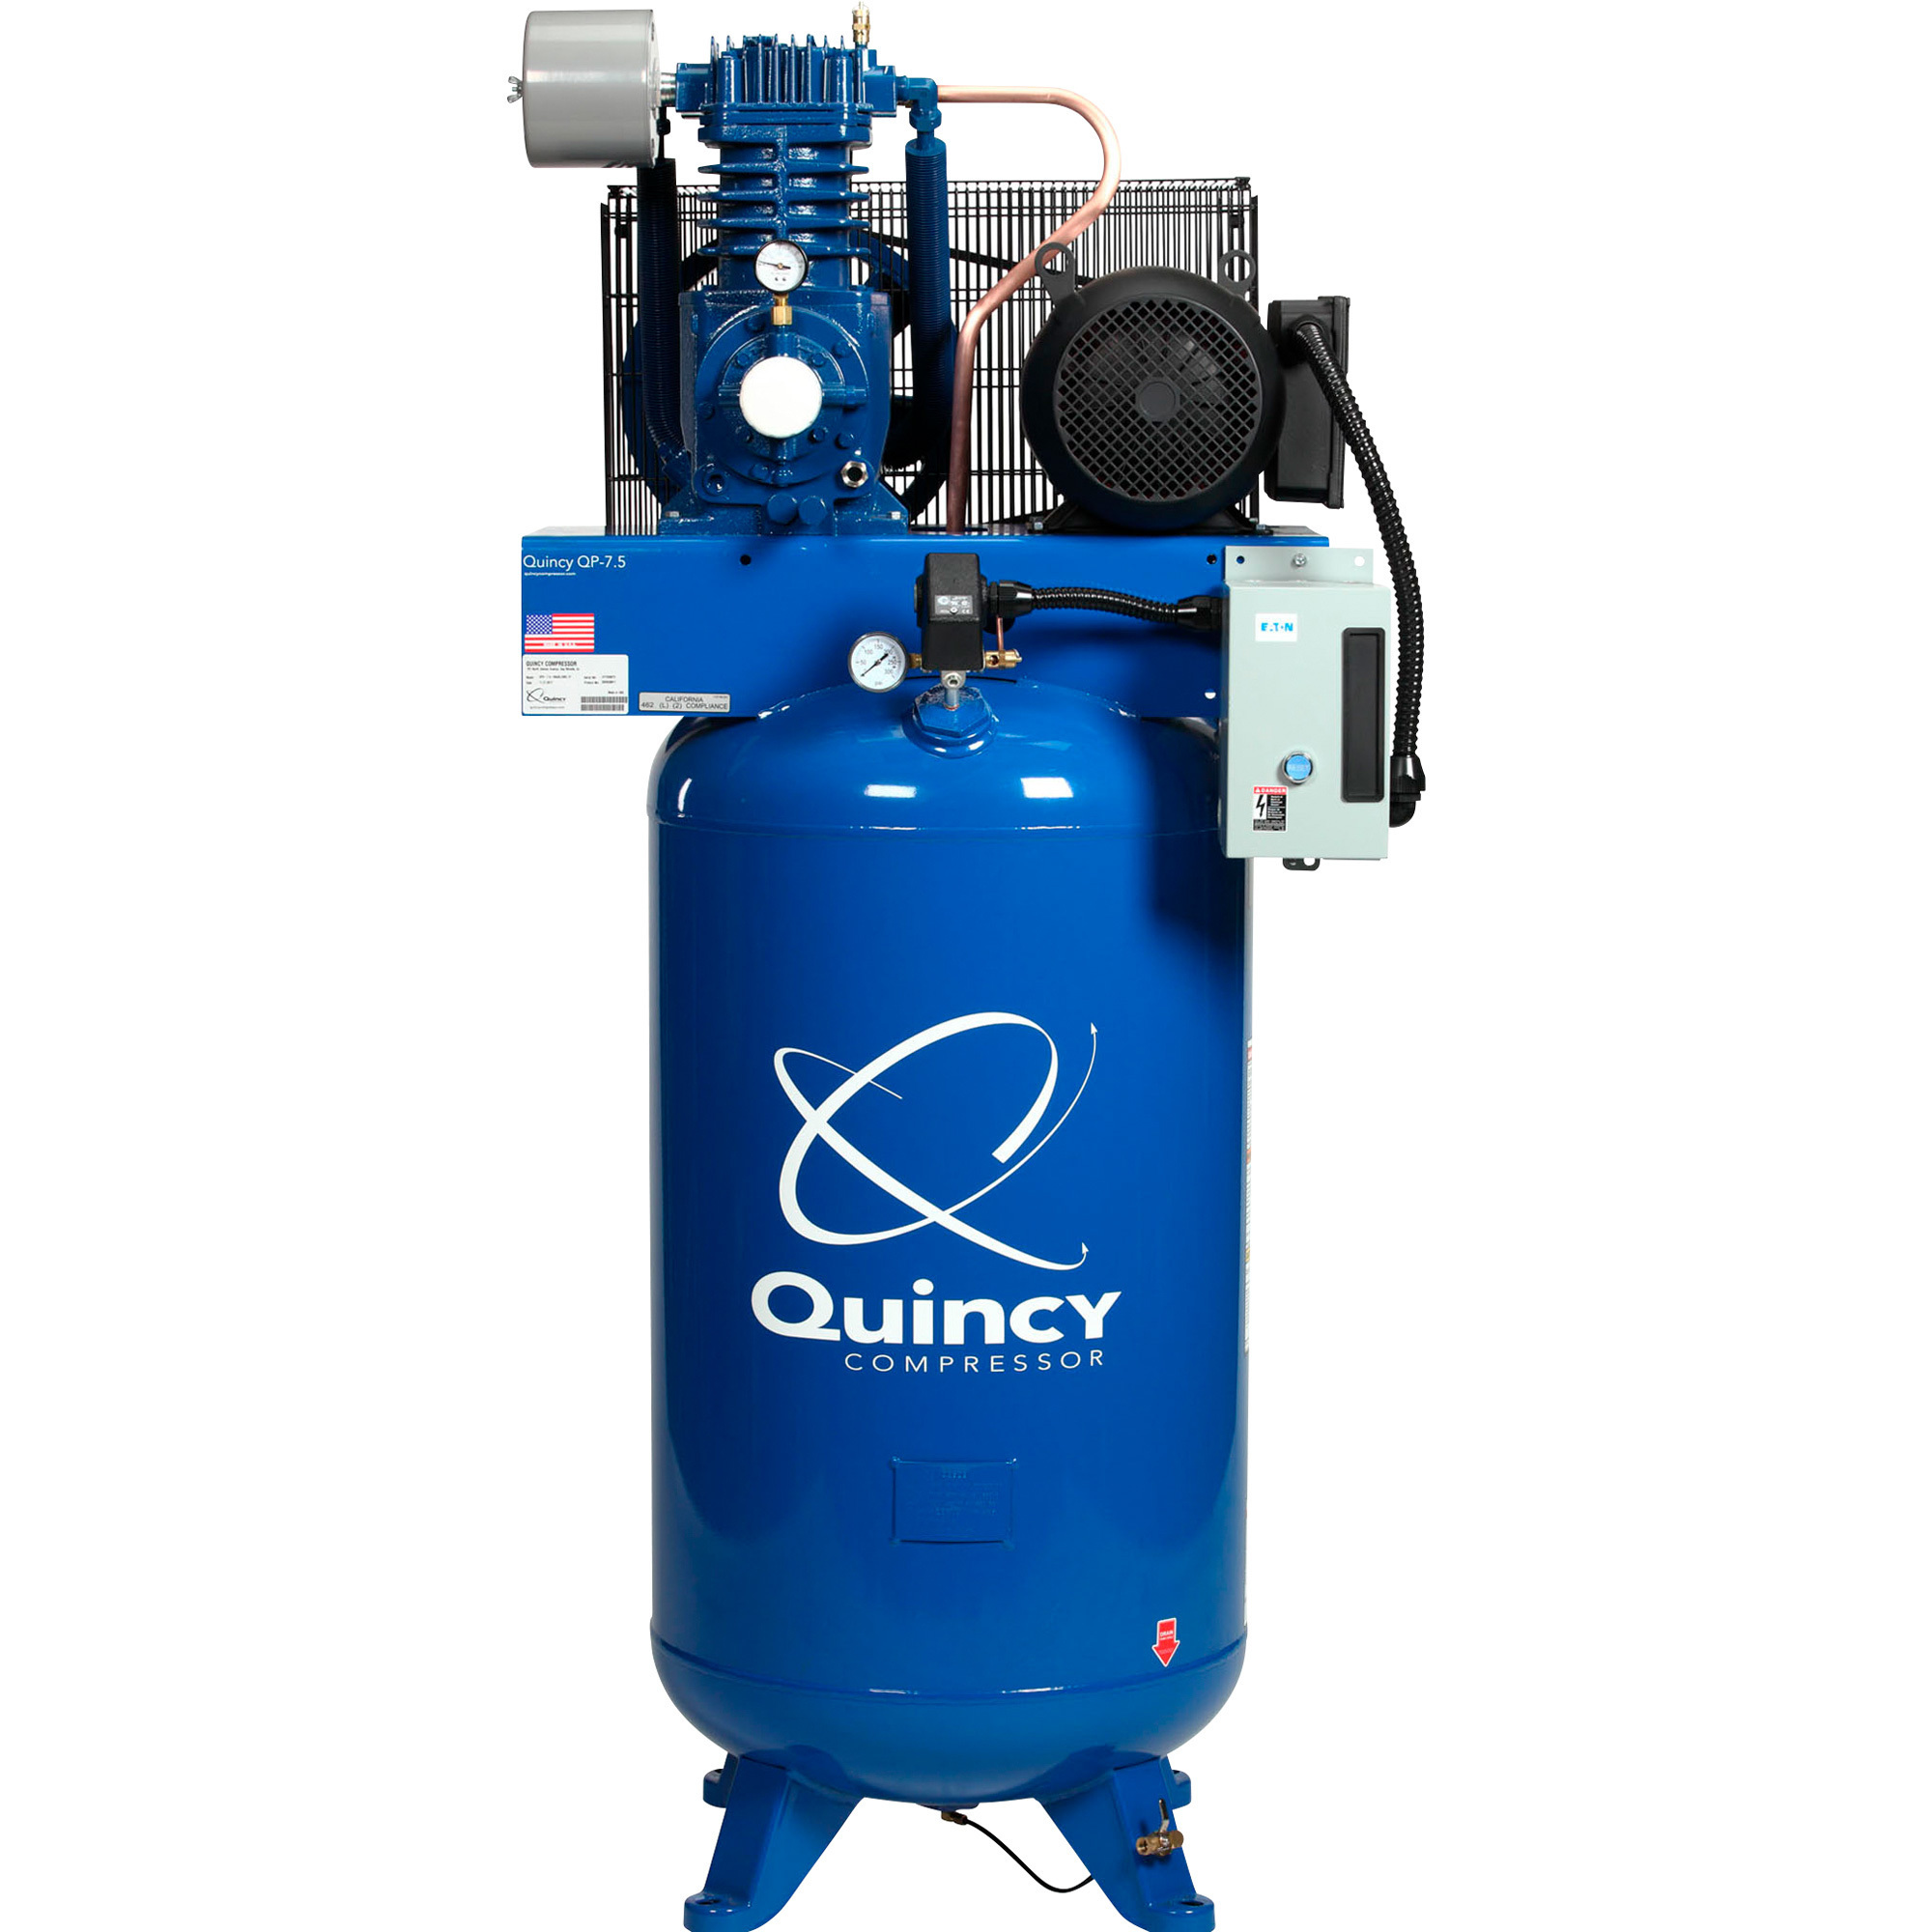 Quincy Compressor 2020039818